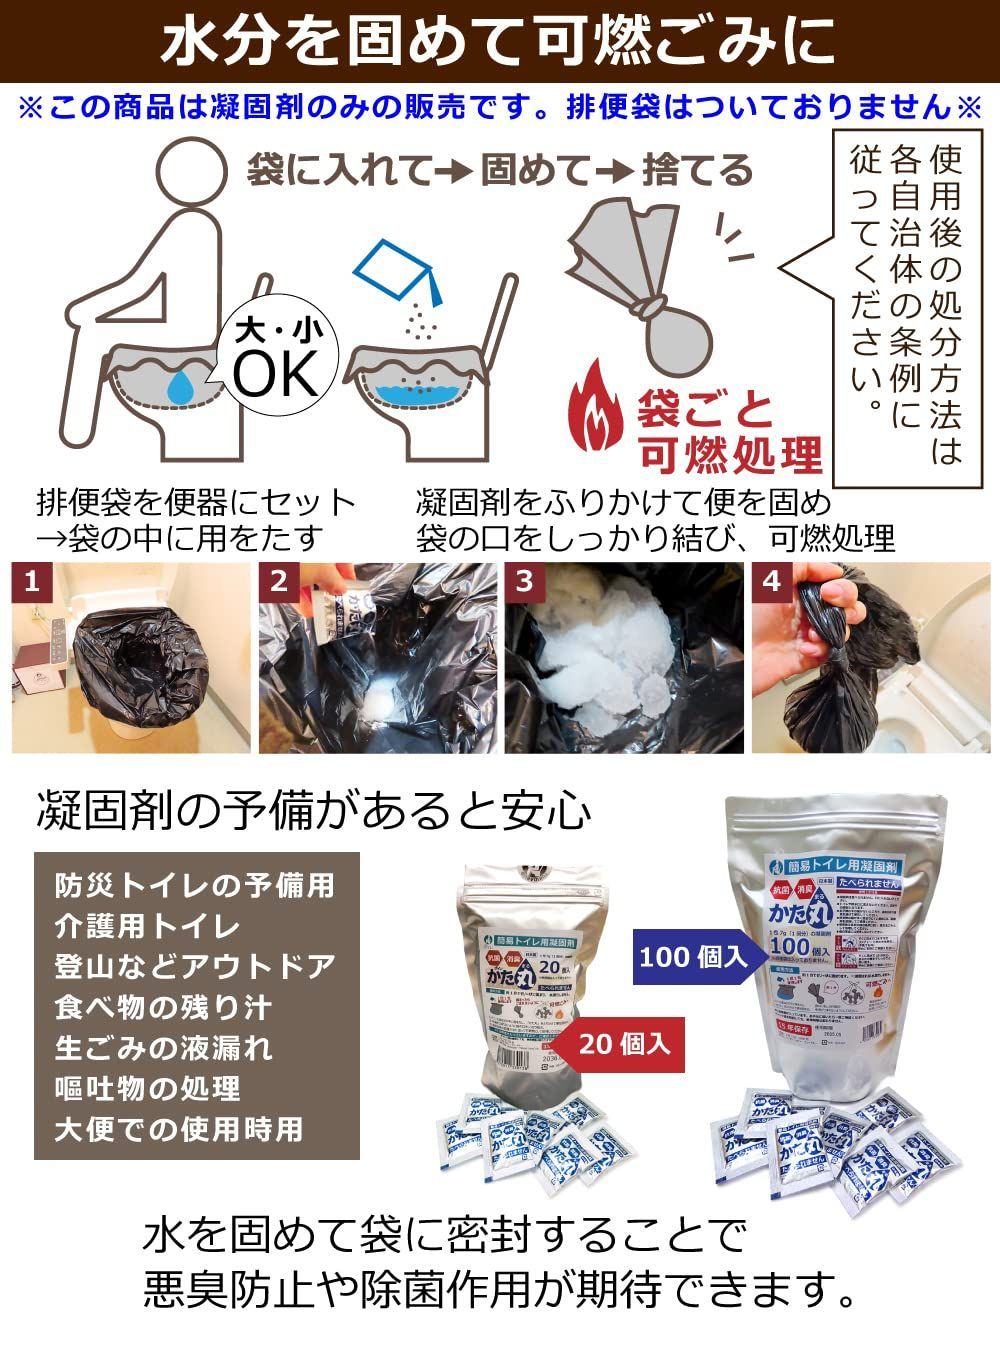 ポイレ かた丸 防災 簡易トイレ 凝固剤のみ 100個 個包装 日本製 15年 ...